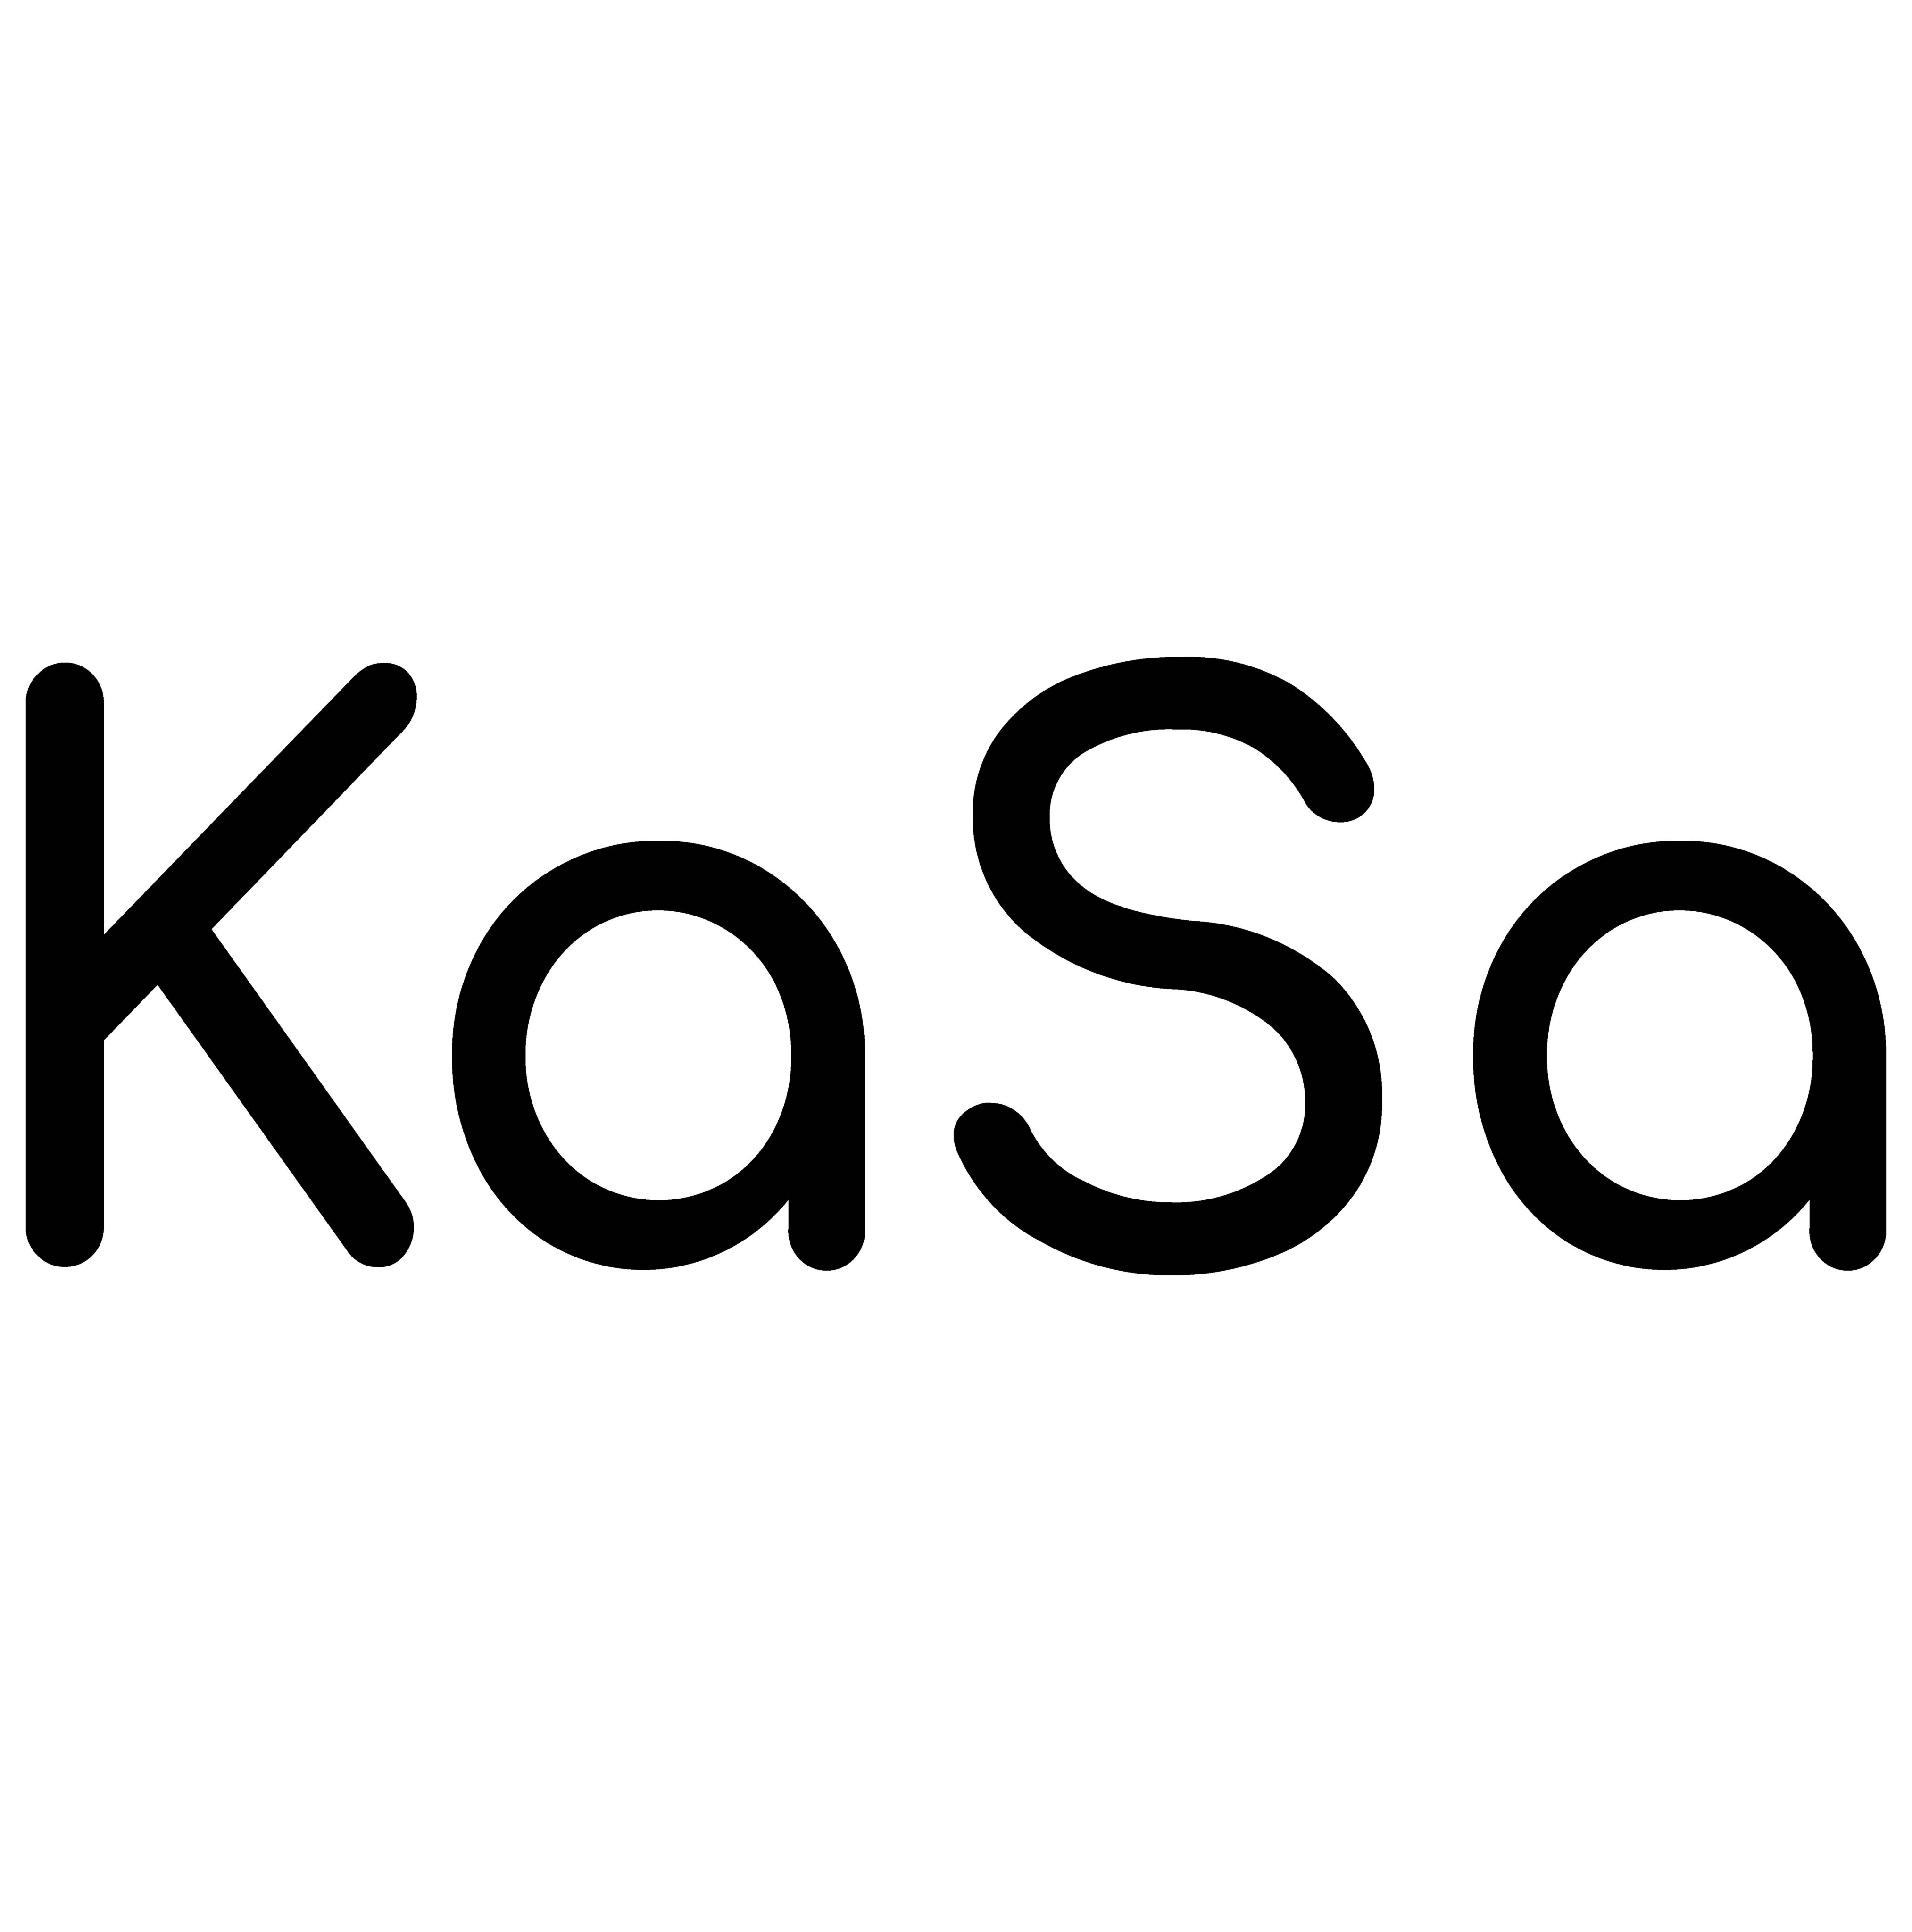 Kasa